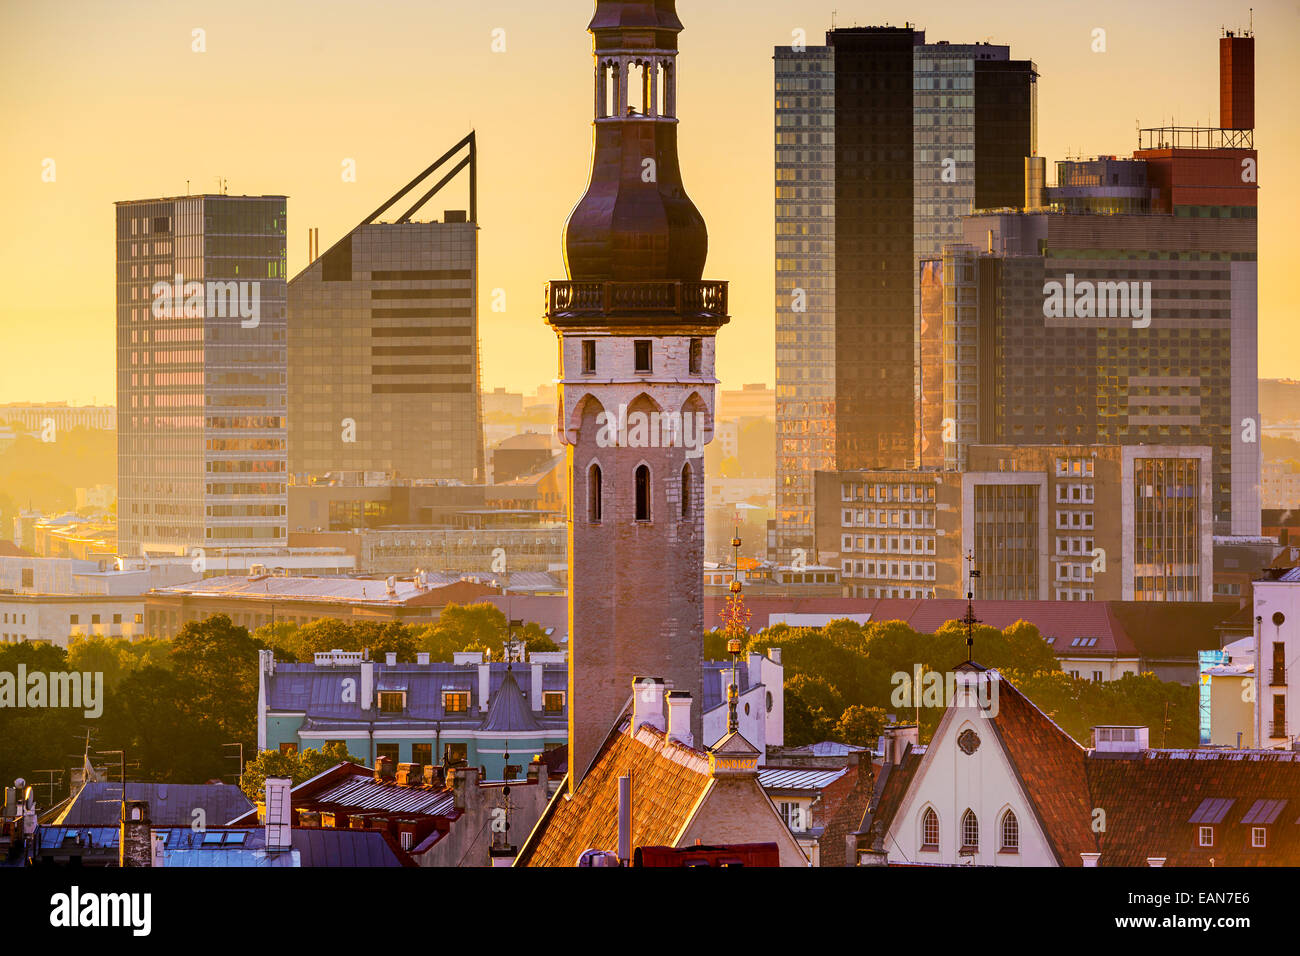 Tallinn, Estonia cityscape in the morning. Stock Photo